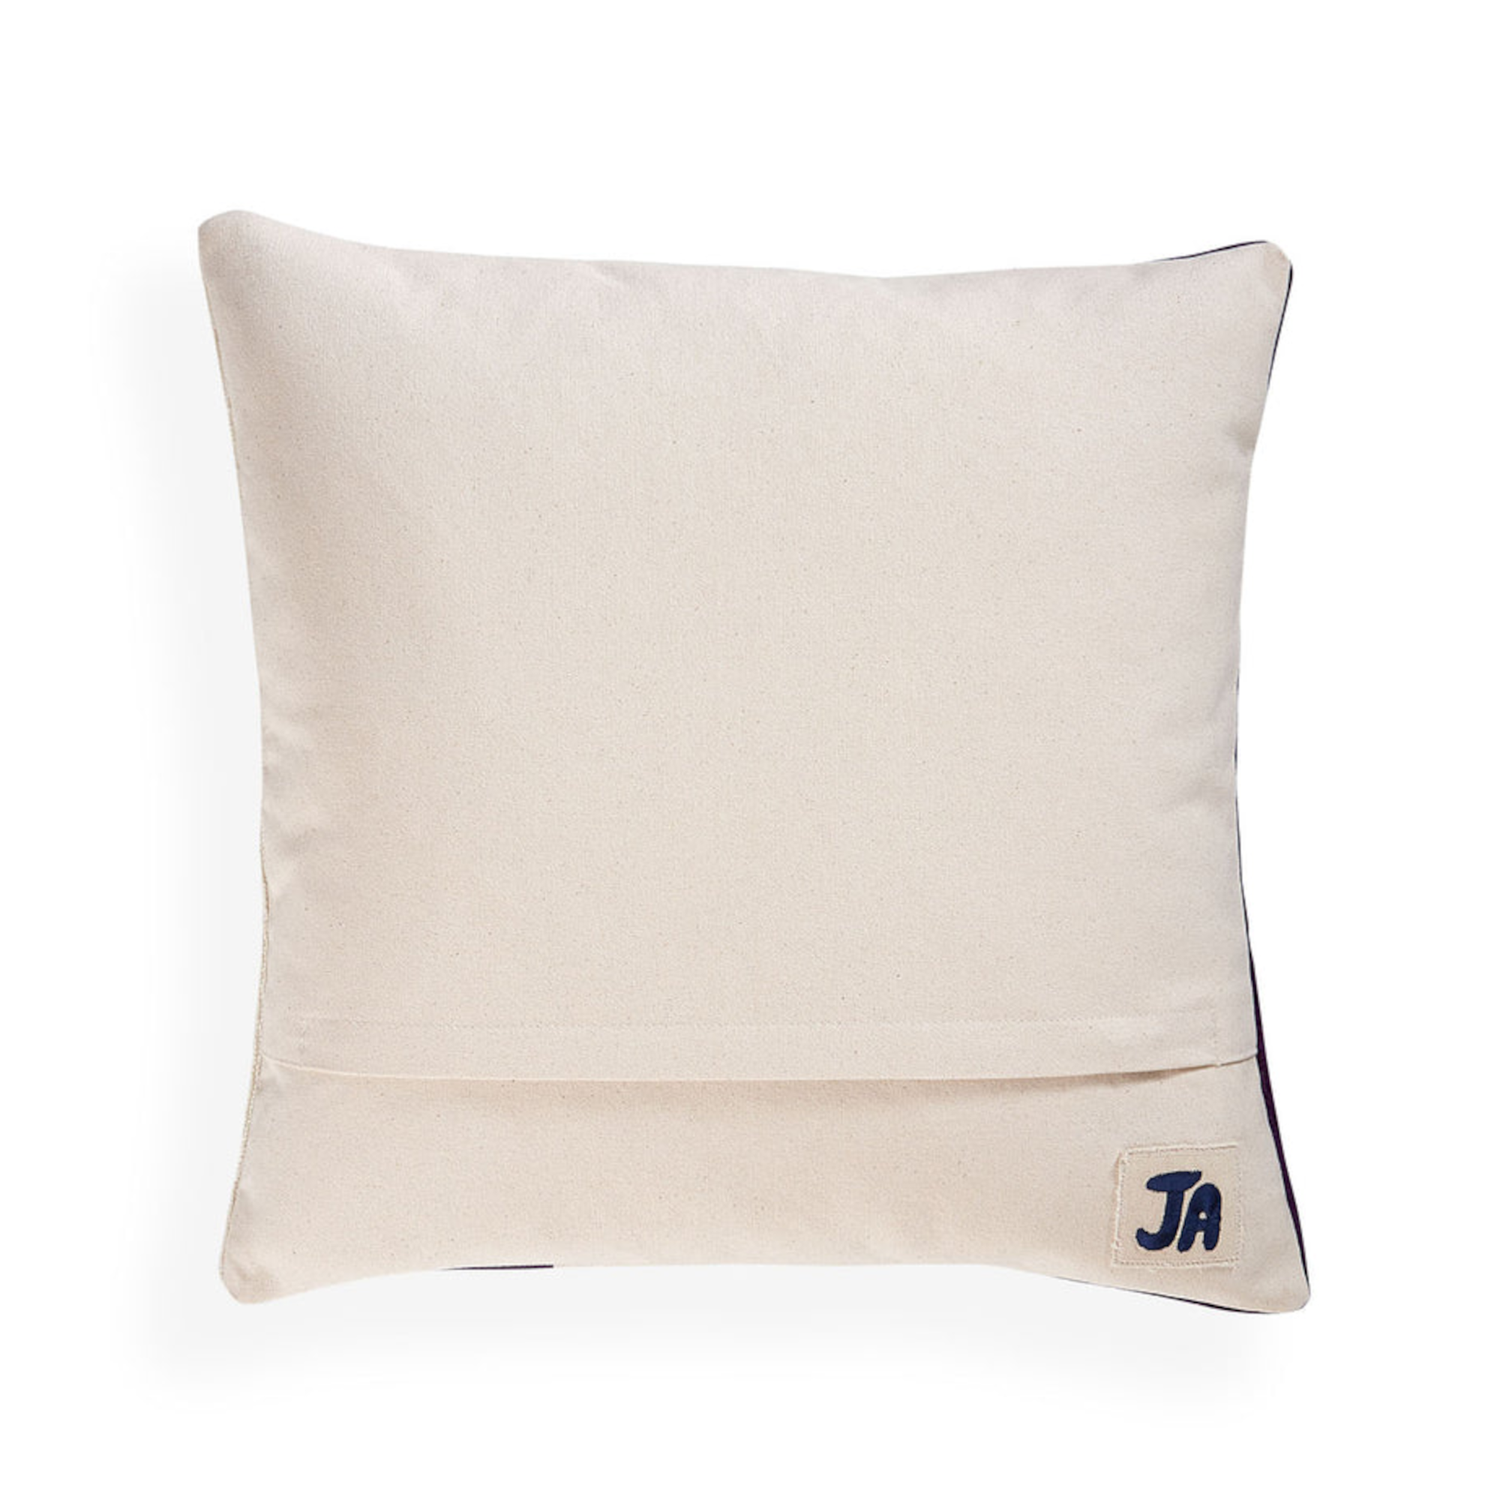 Cushion OJAI BRANCH, brown-white